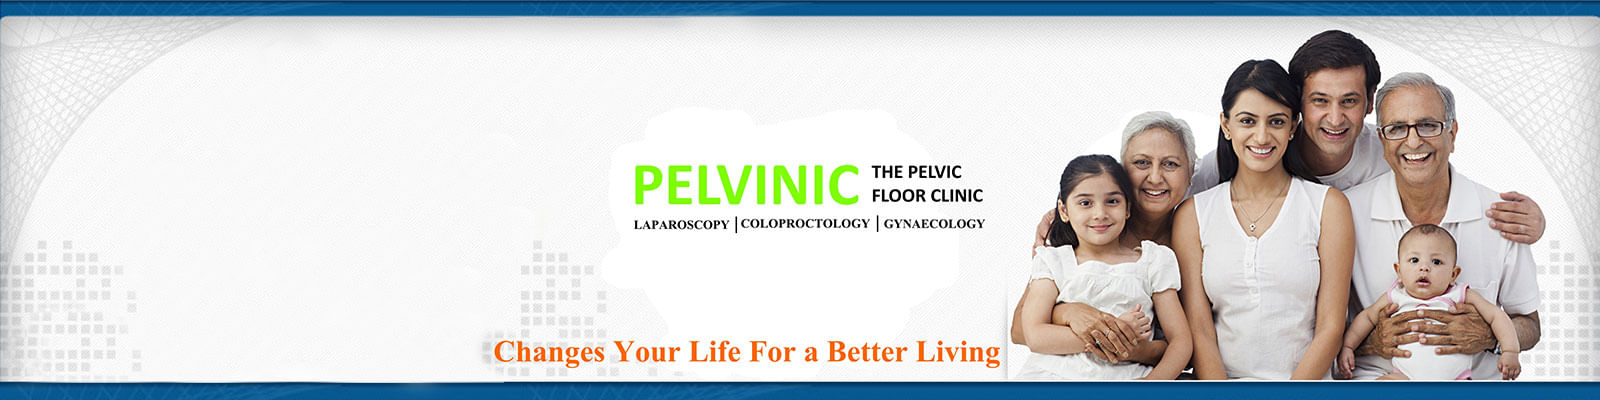 Pelvinic Clinic